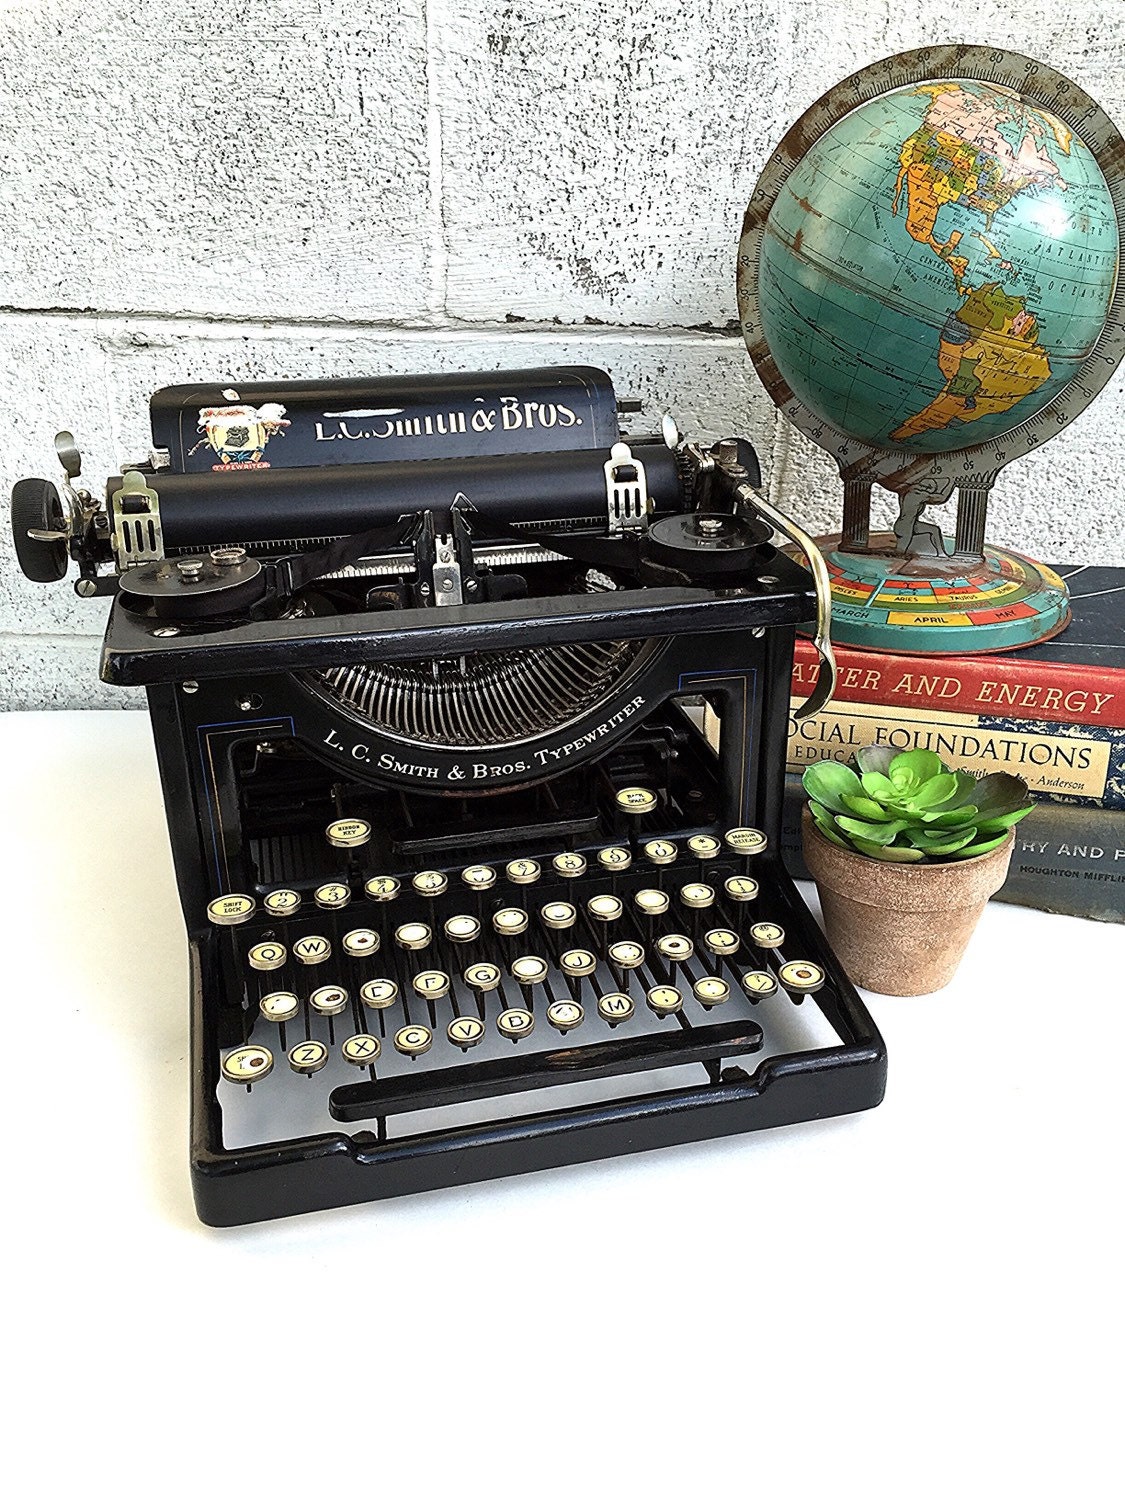 lc smith & bros typewriter